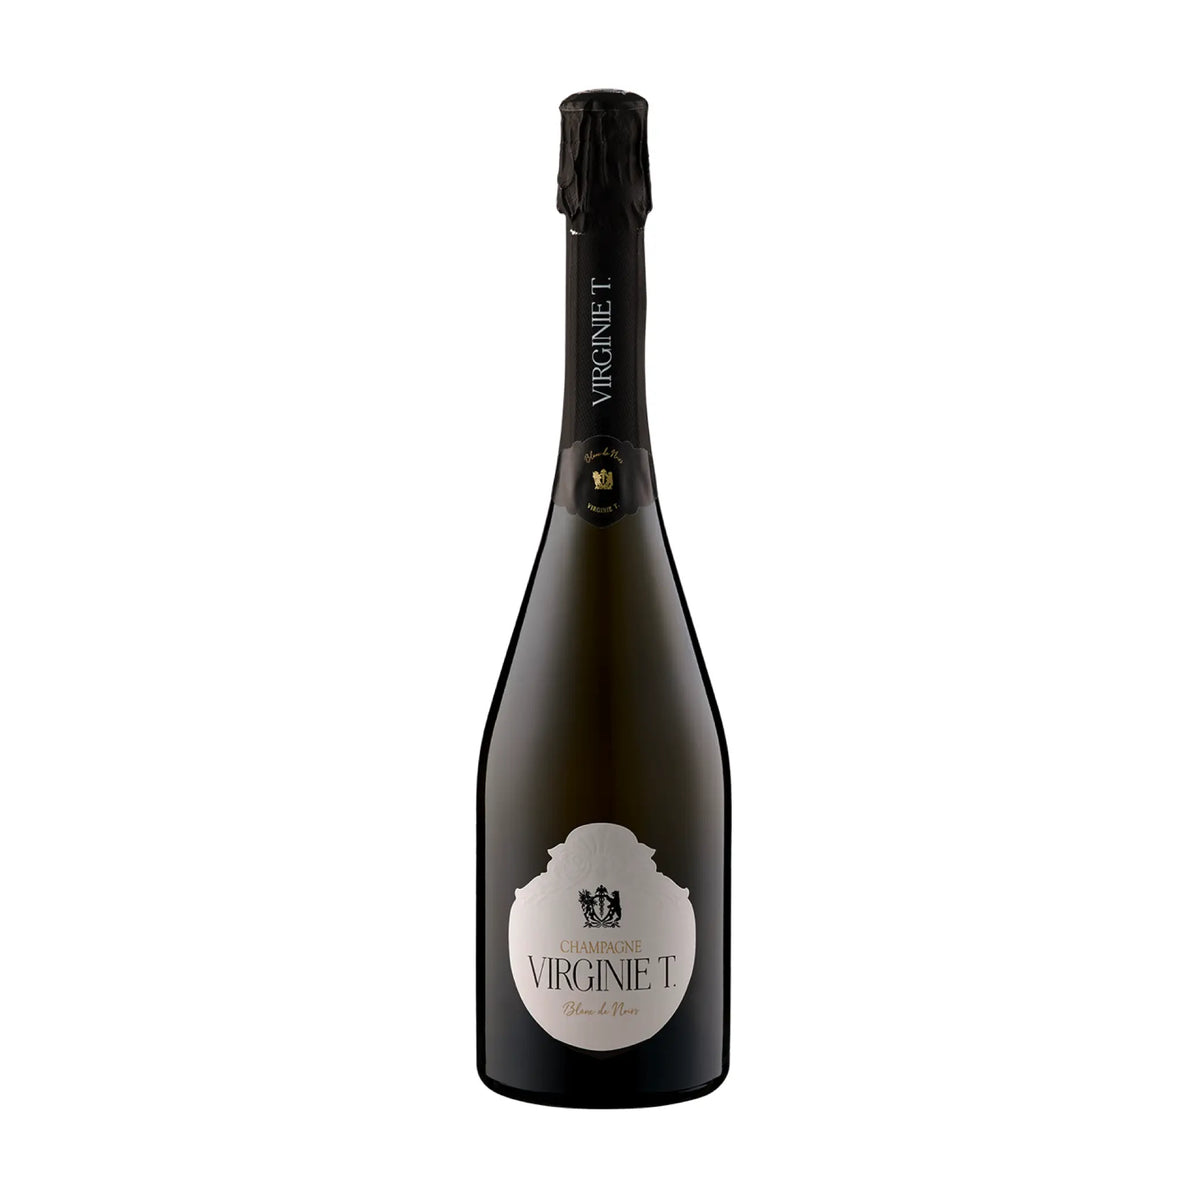 Champagne Virginie T.-Schaumwein-Schaumwein-Frankreich-Champagne-2015 Virginie T. Blanc des Noirs Extra Brut-WINECOM